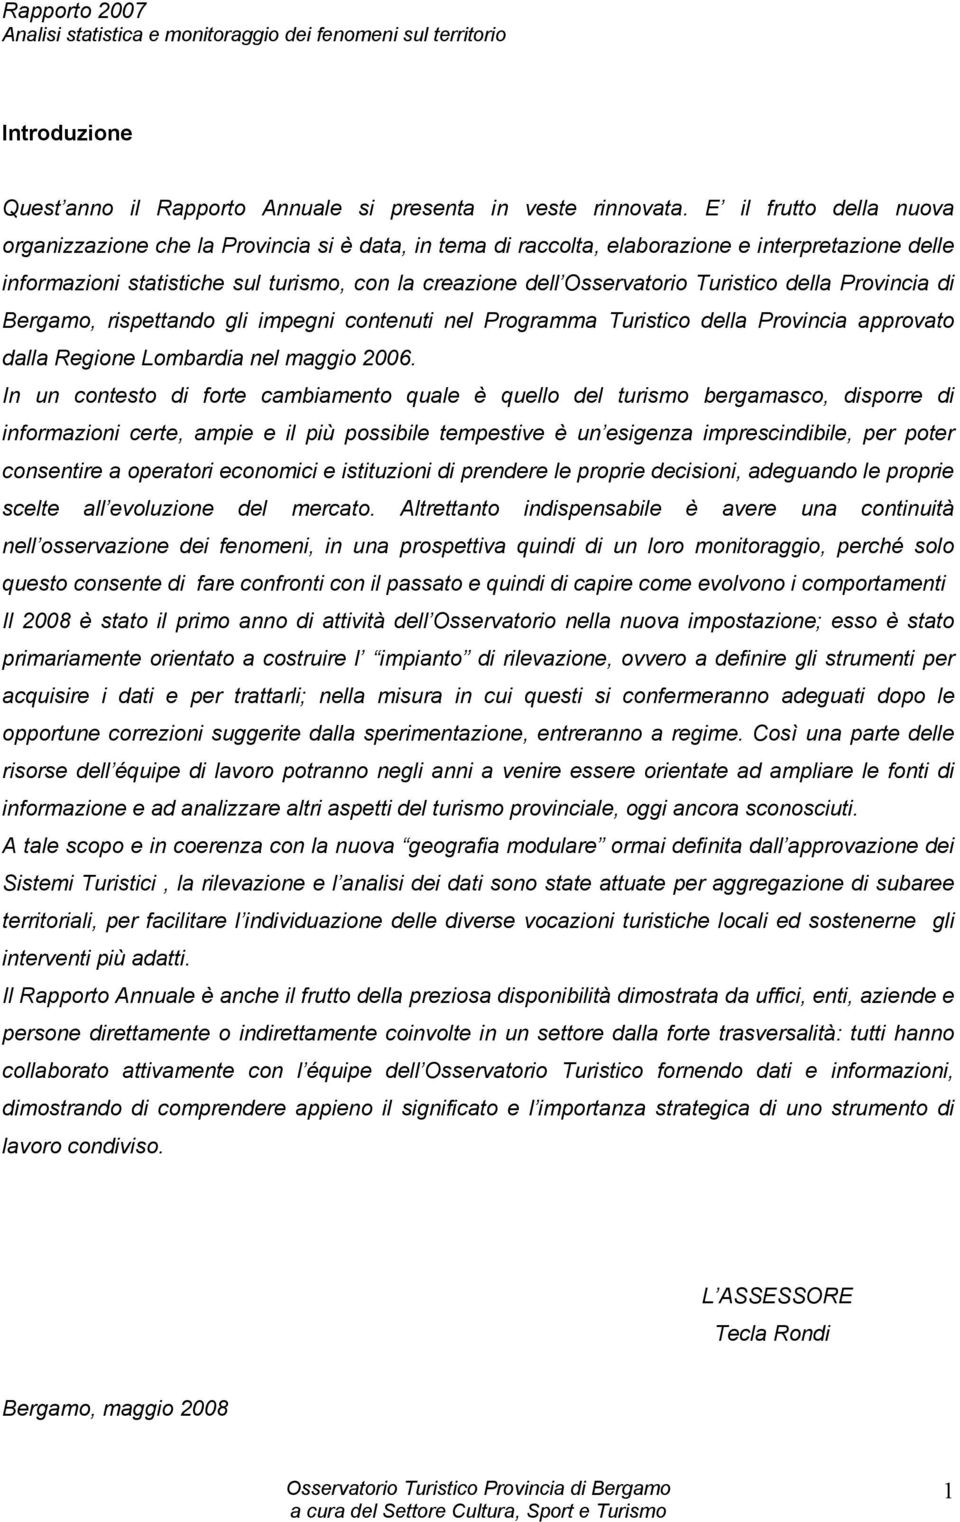 Turistico della Provincia di Bergamo, rispettando gli impegni contenuti nel Programma Turistico della Provincia approvato dalla Regione Lombardia nel maggio 2006.